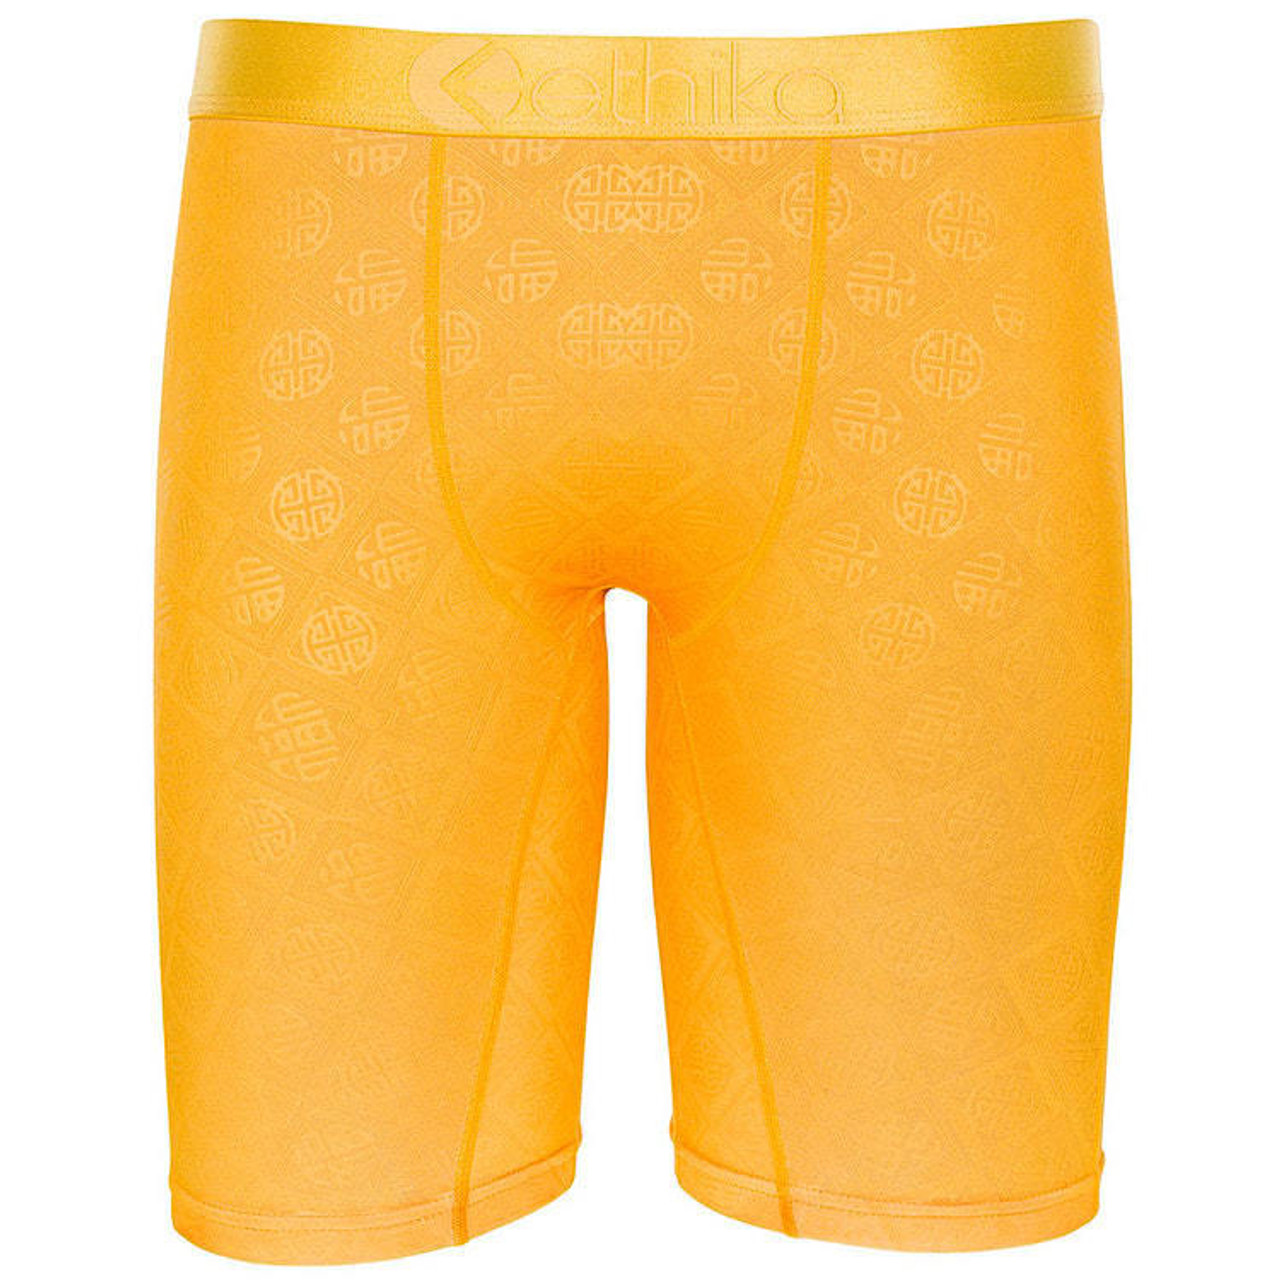 Ethika Men's Staple Fit No Rise Boxer Briefs Underwear Shorts Gold